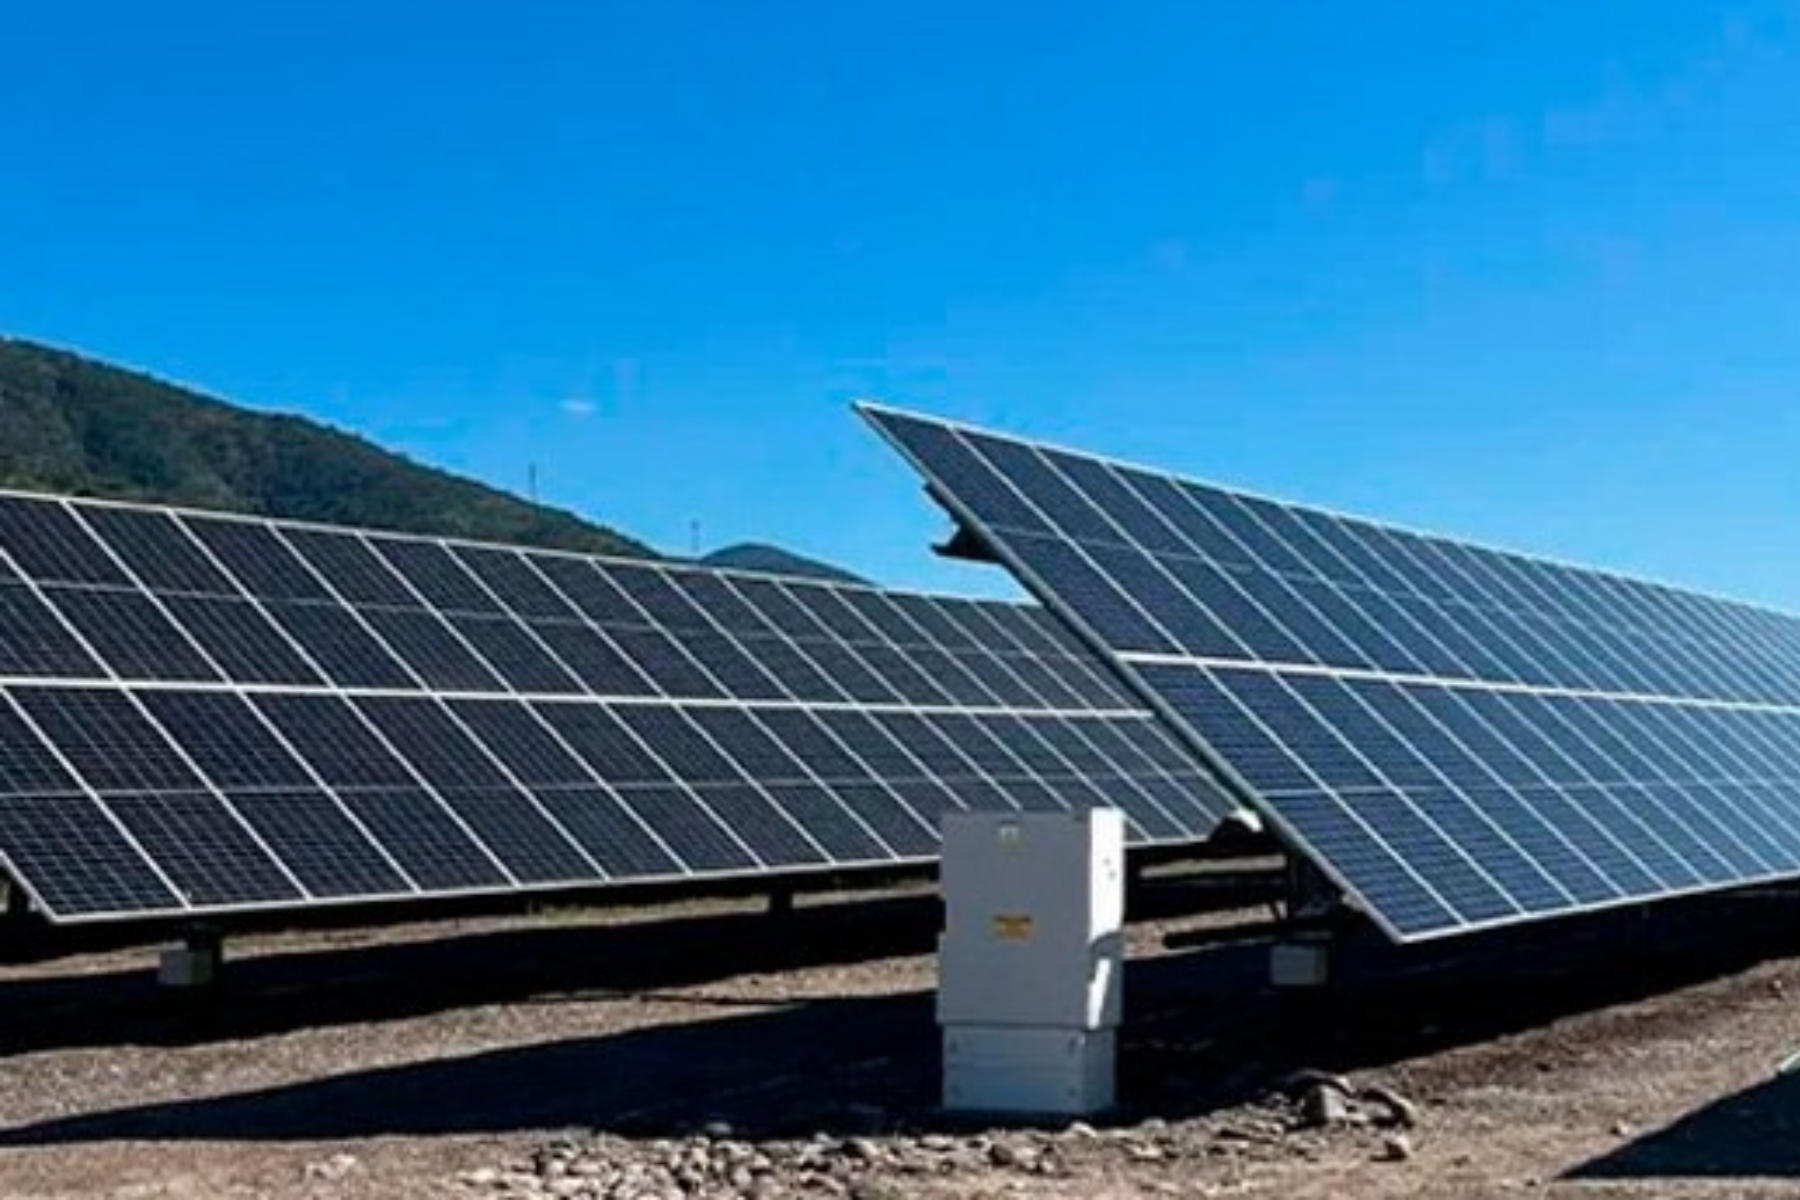 Proyecto fotovoltaico de 24 en MW en Ñuble obtiene aprobación ambiental